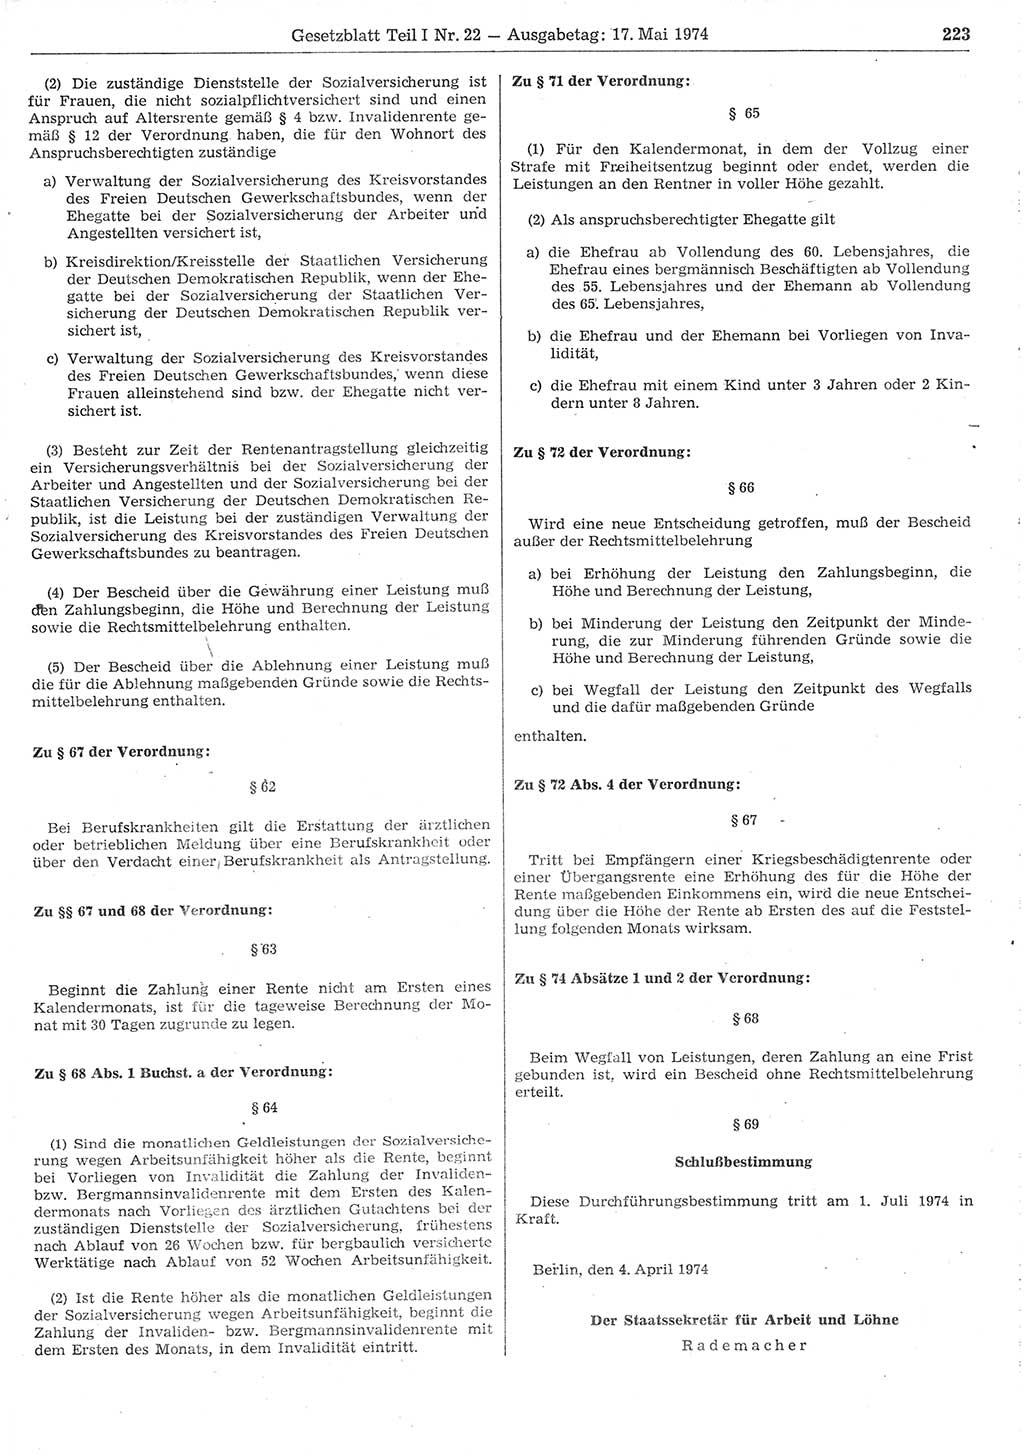 Gesetzblatt (GBl.) der Deutschen Demokratischen Republik (DDR) Teil Ⅰ 1974, Seite 223 (GBl. DDR Ⅰ 1974, S. 223)